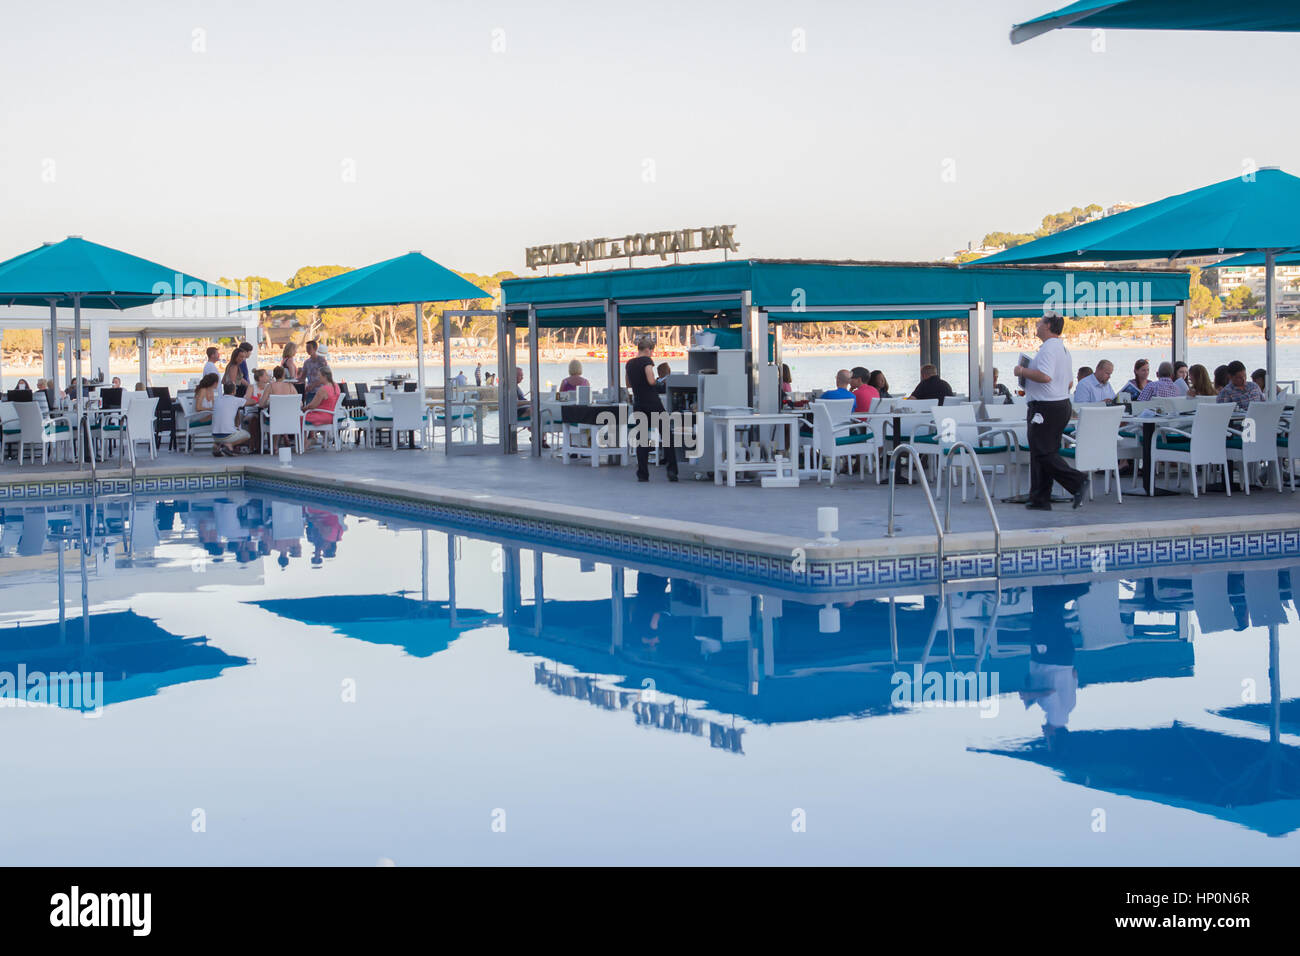 MALLORCA, Spanien - 17 Juli: Diner serviert auf der Terrasse mit Schwimmbad im Hotel auf Mallorca. 17. Juli 2016 Stockfoto